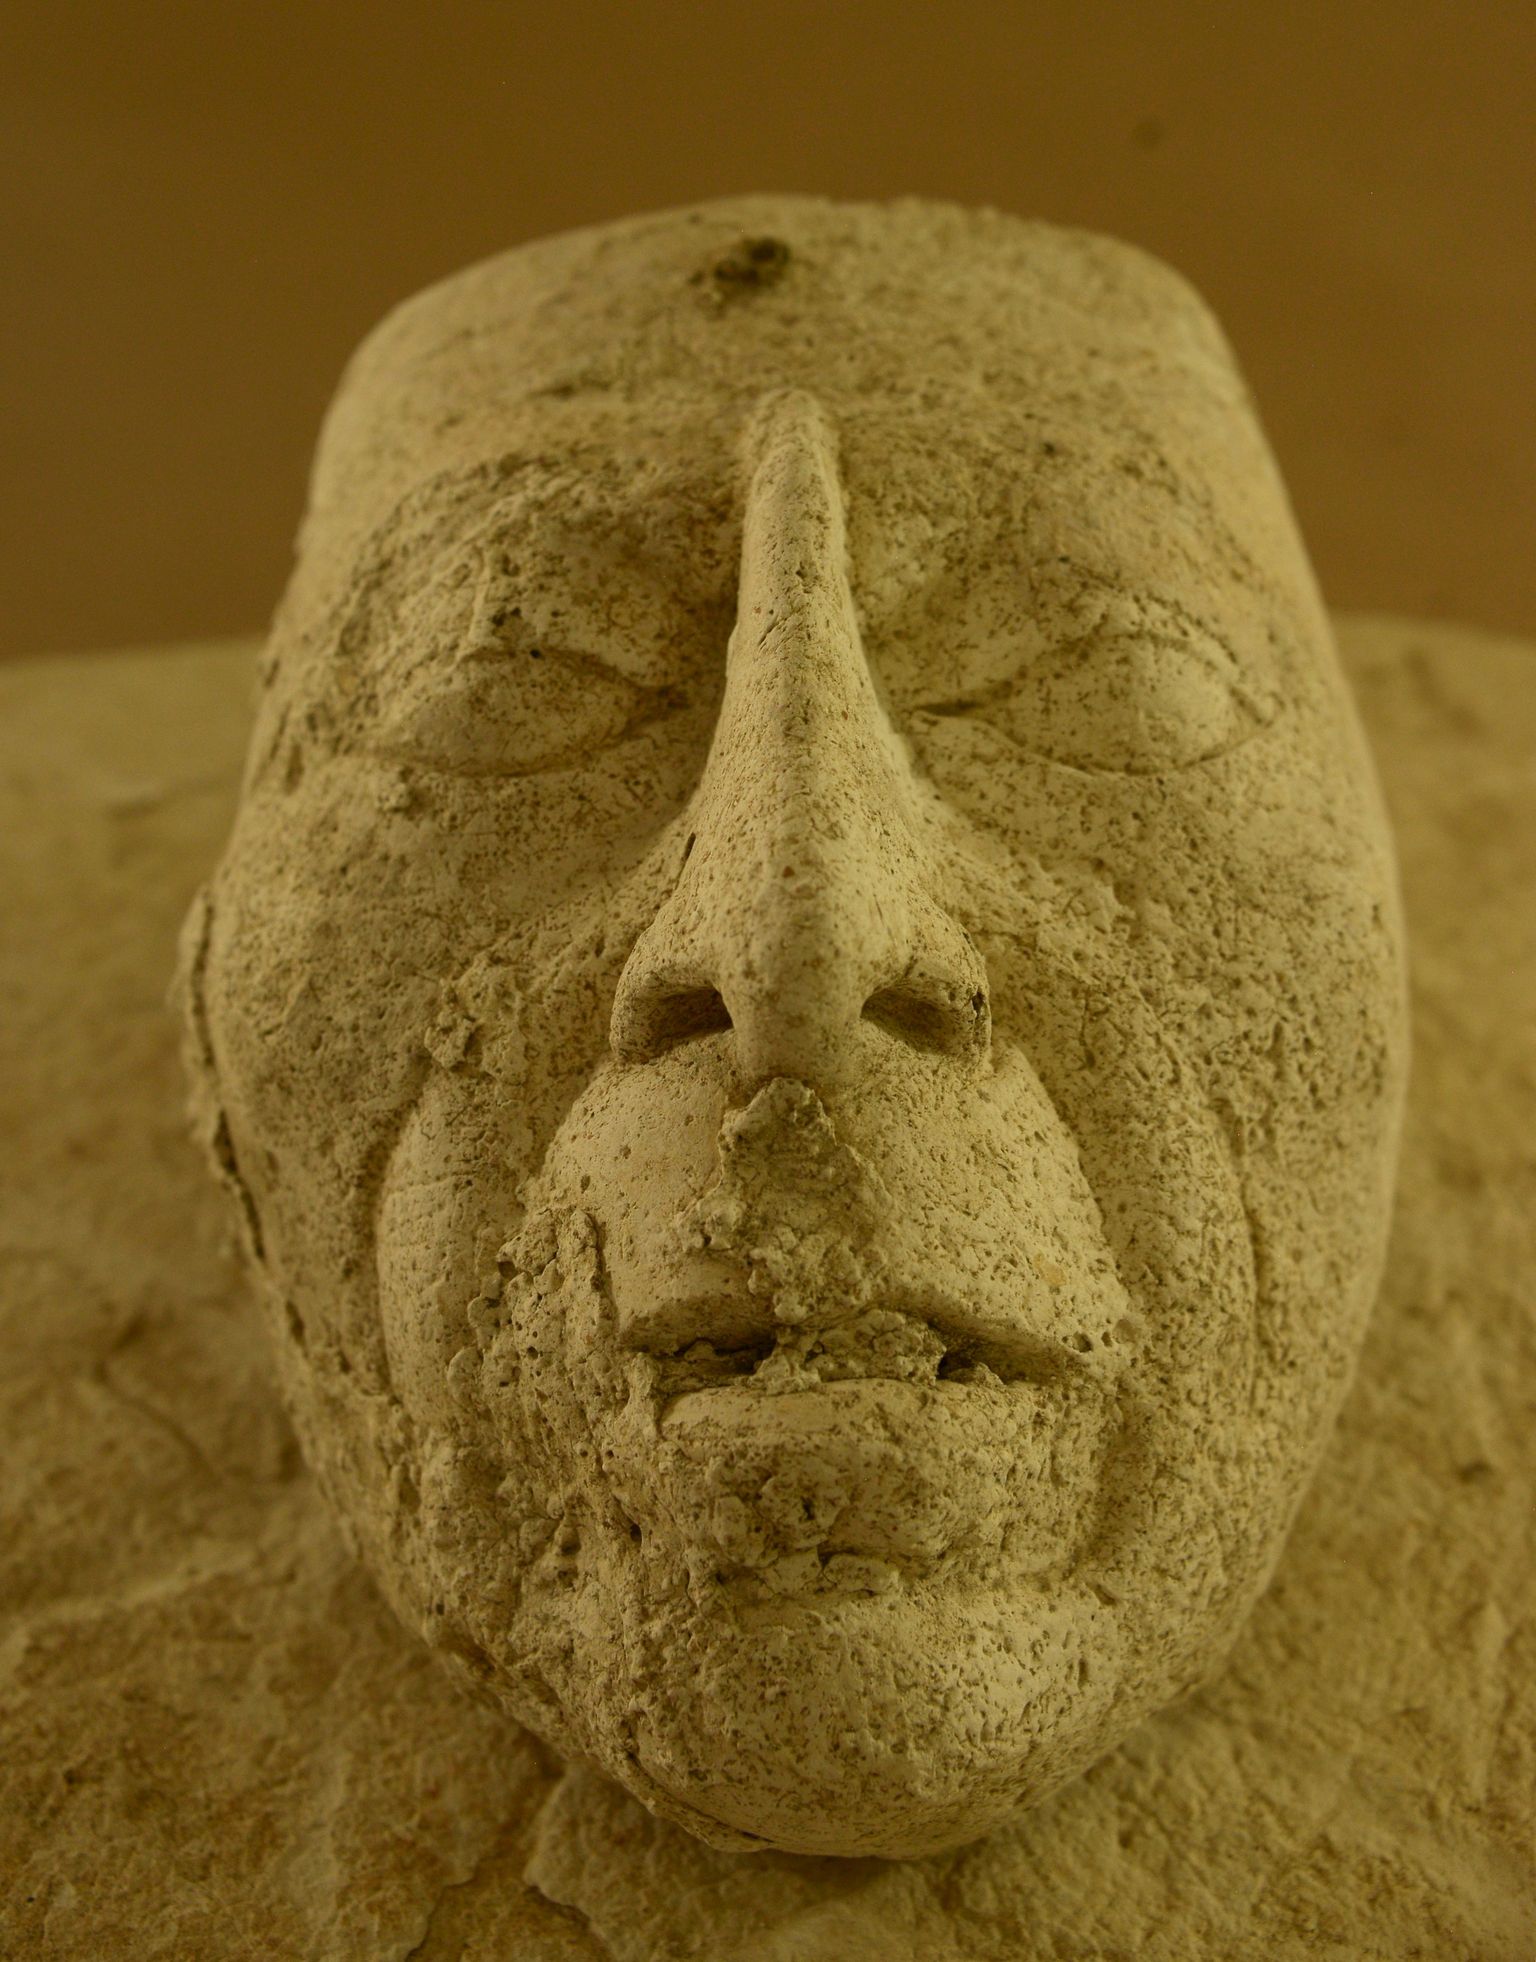 Maiade kuninga Pakali mask